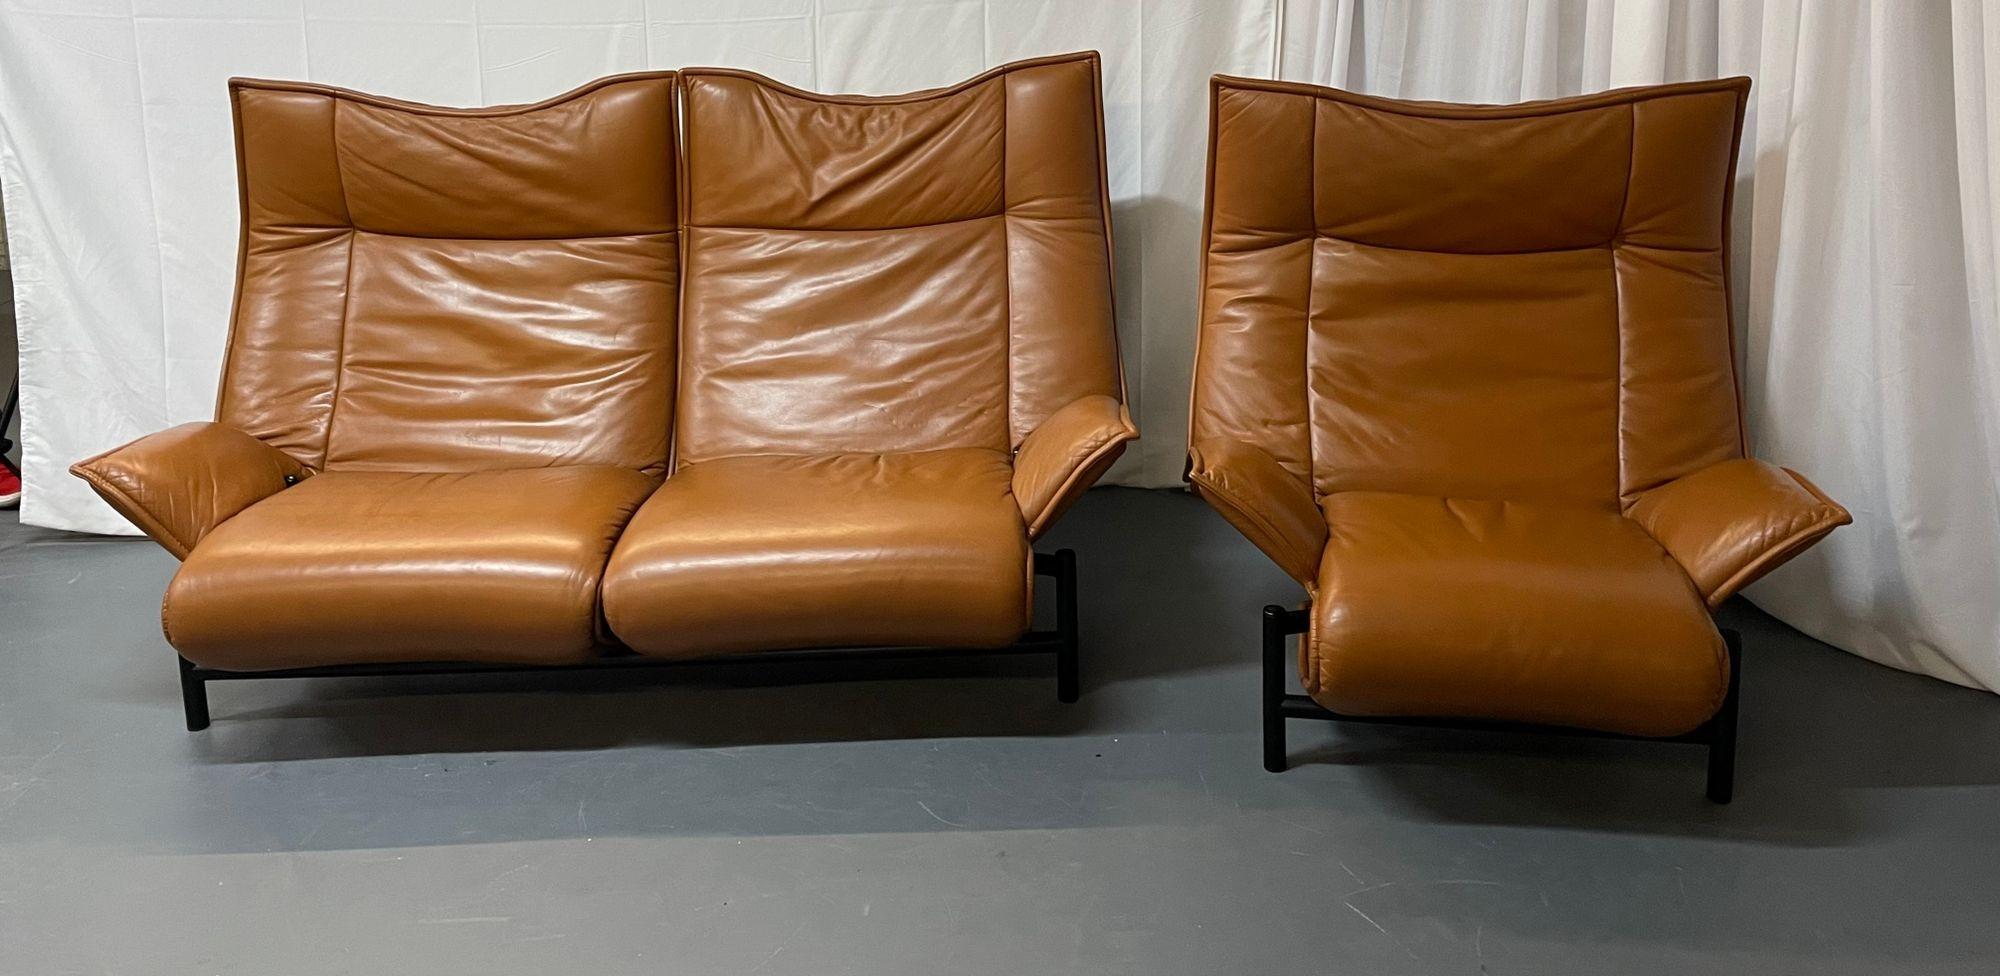 Vico Magistretti for Cassina Veranda Sofa, Two-Seater, Leather, Italian Modern For Sale 5